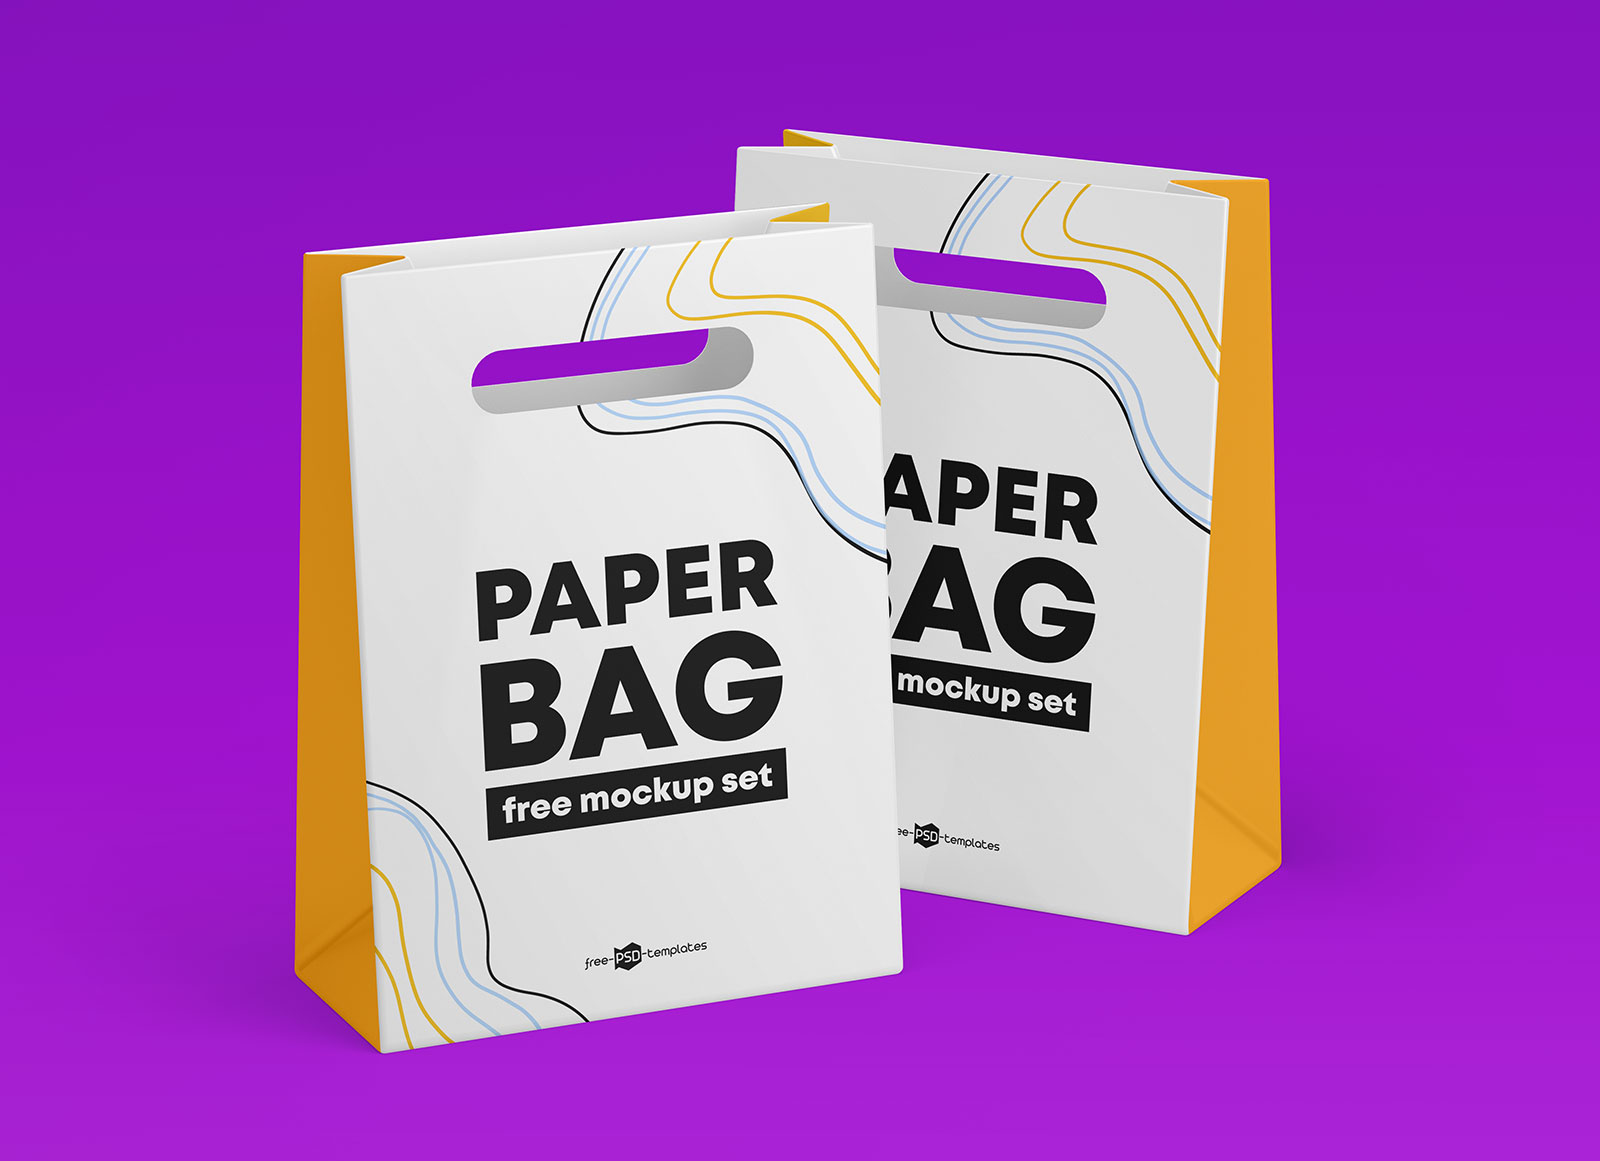 A free take away paper bag mockup